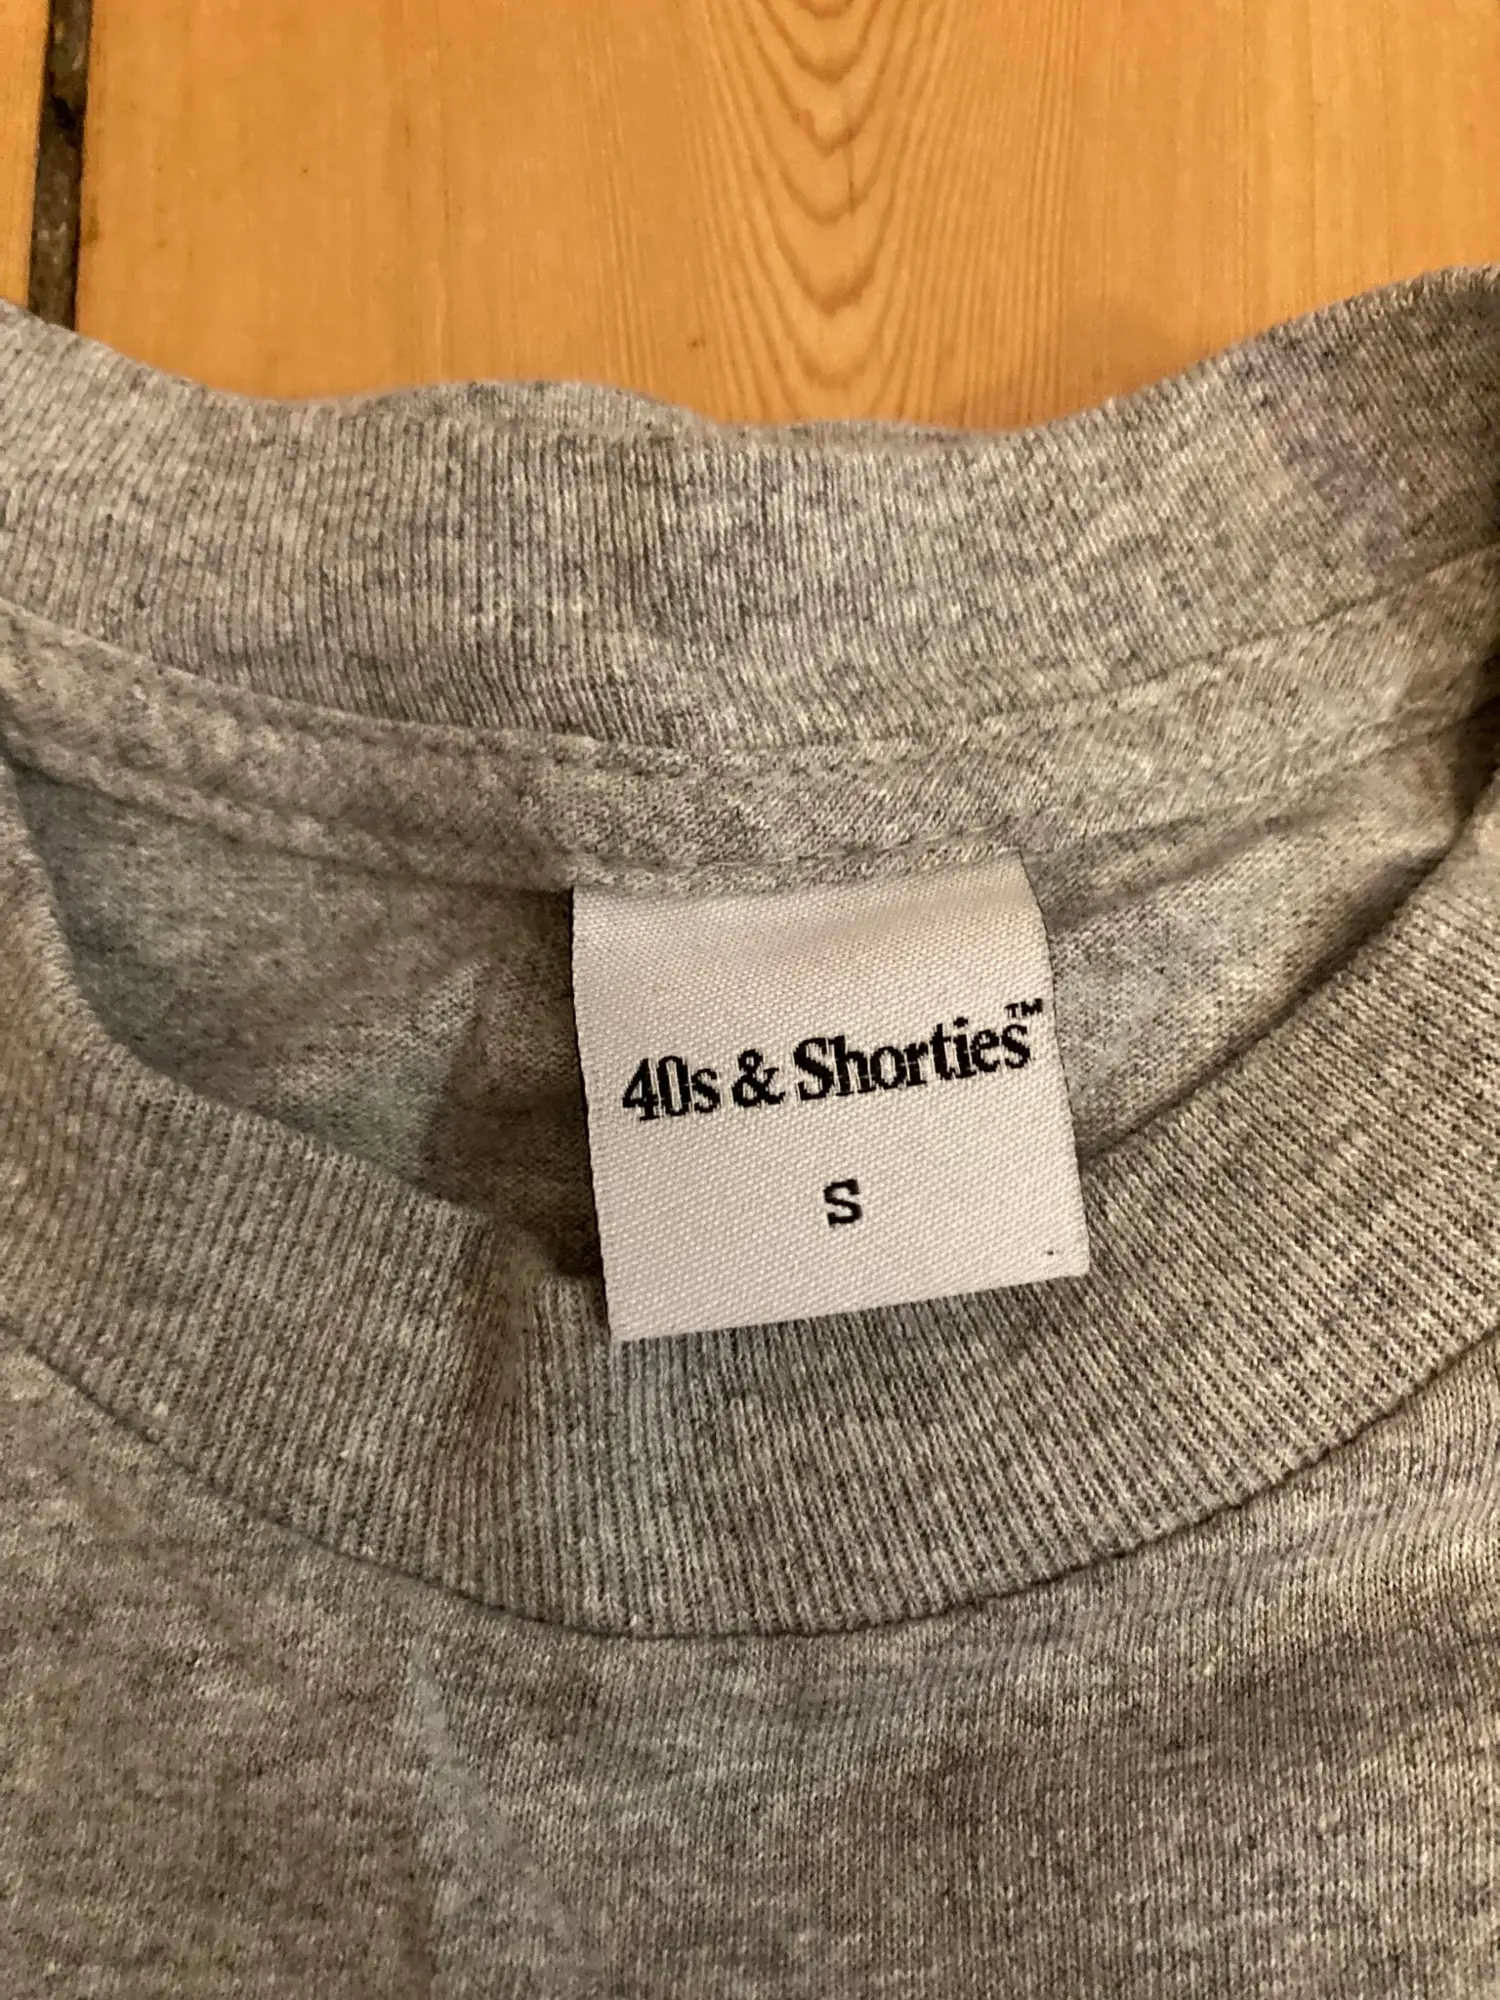 40s  Shorties t-shirt